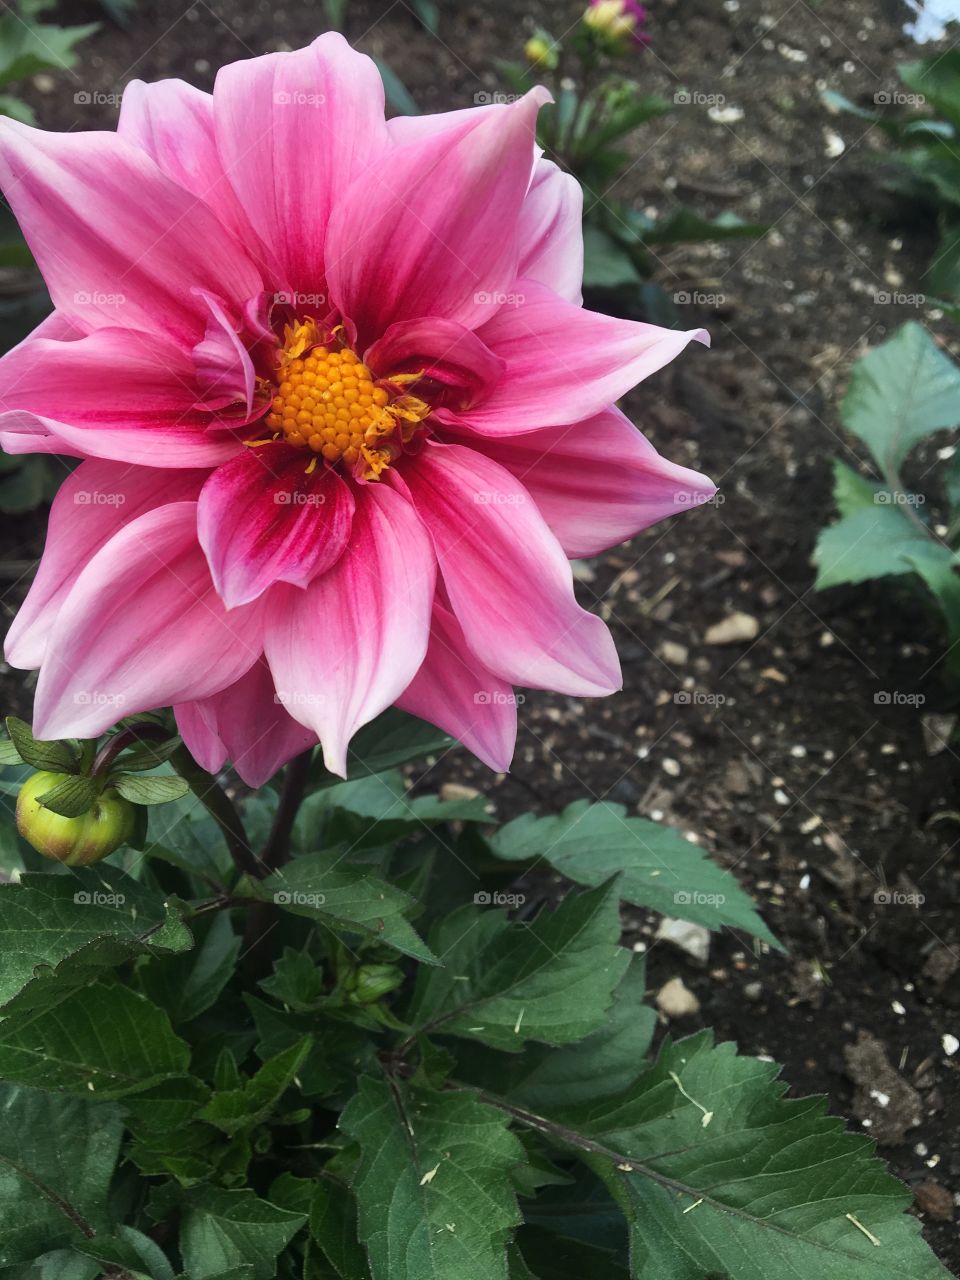 A bright pink flower in a garden